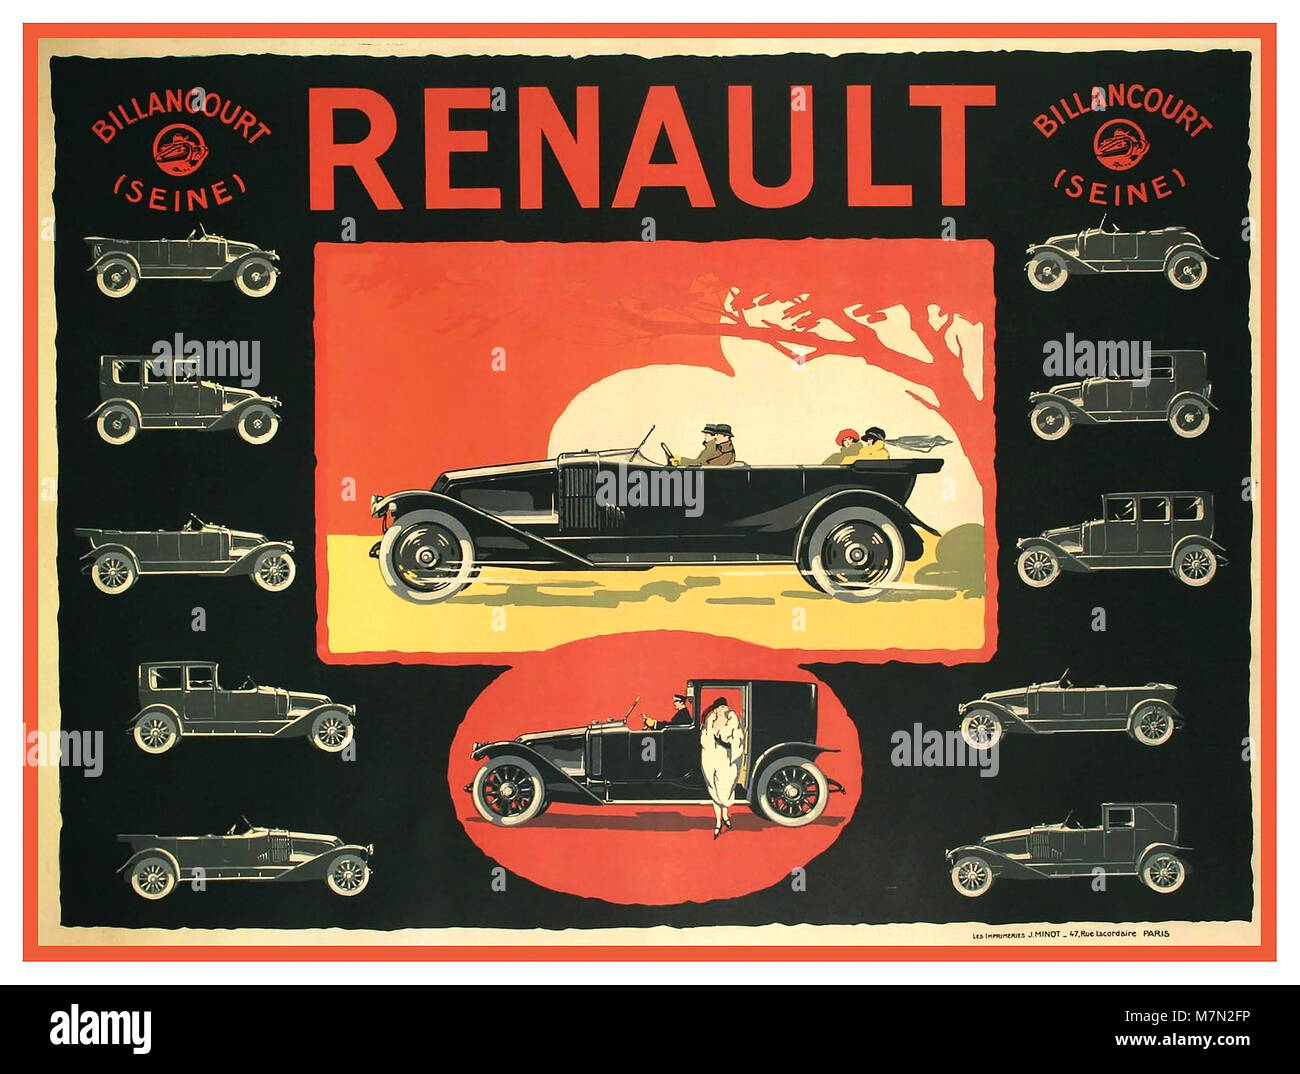 1900 Vintage französische Renault Kfz Pkw Poster. Eine französische Art Deco Poster für Renault, ca. 1920er-Jahre, die elegante neue Modelle des Unternehmens des Jahres und die stilvolle Menschen, die in ihnen reiten. Billancourt Frankreich Stockfoto